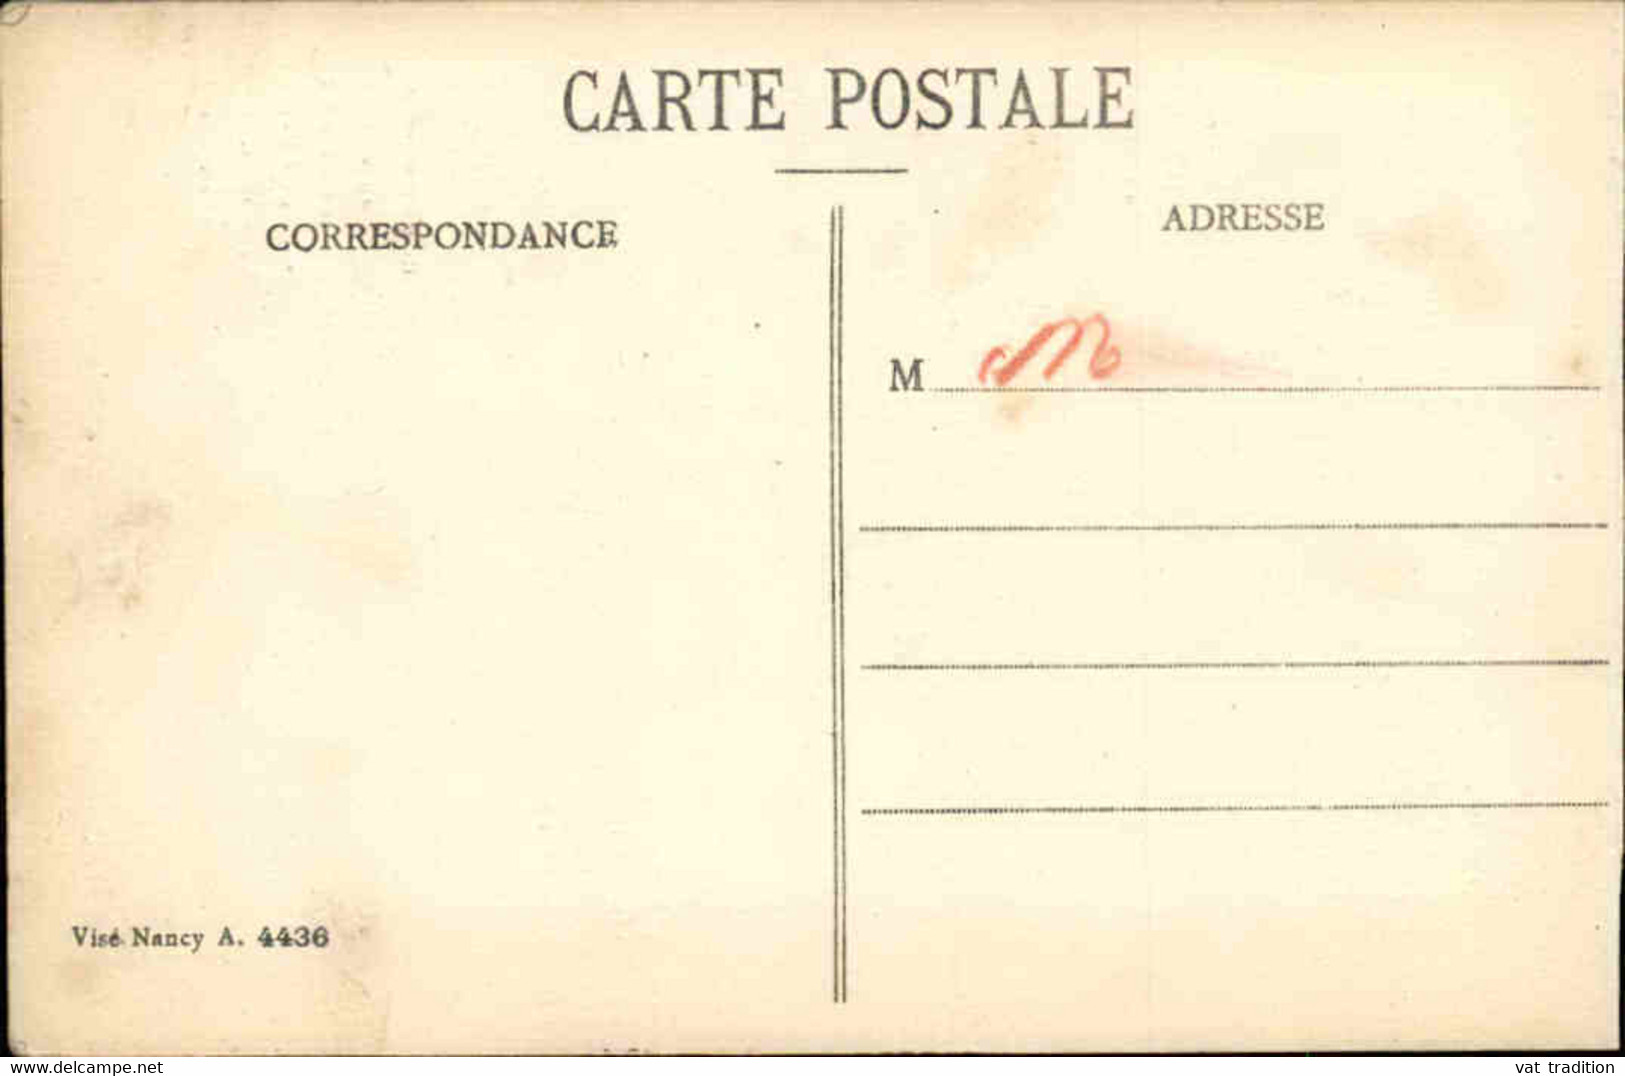 MONNAIES - Carte Postale Représentant Les Billets De Change Remois ( 1914)  - L 129577 - Monnaies (représentations)